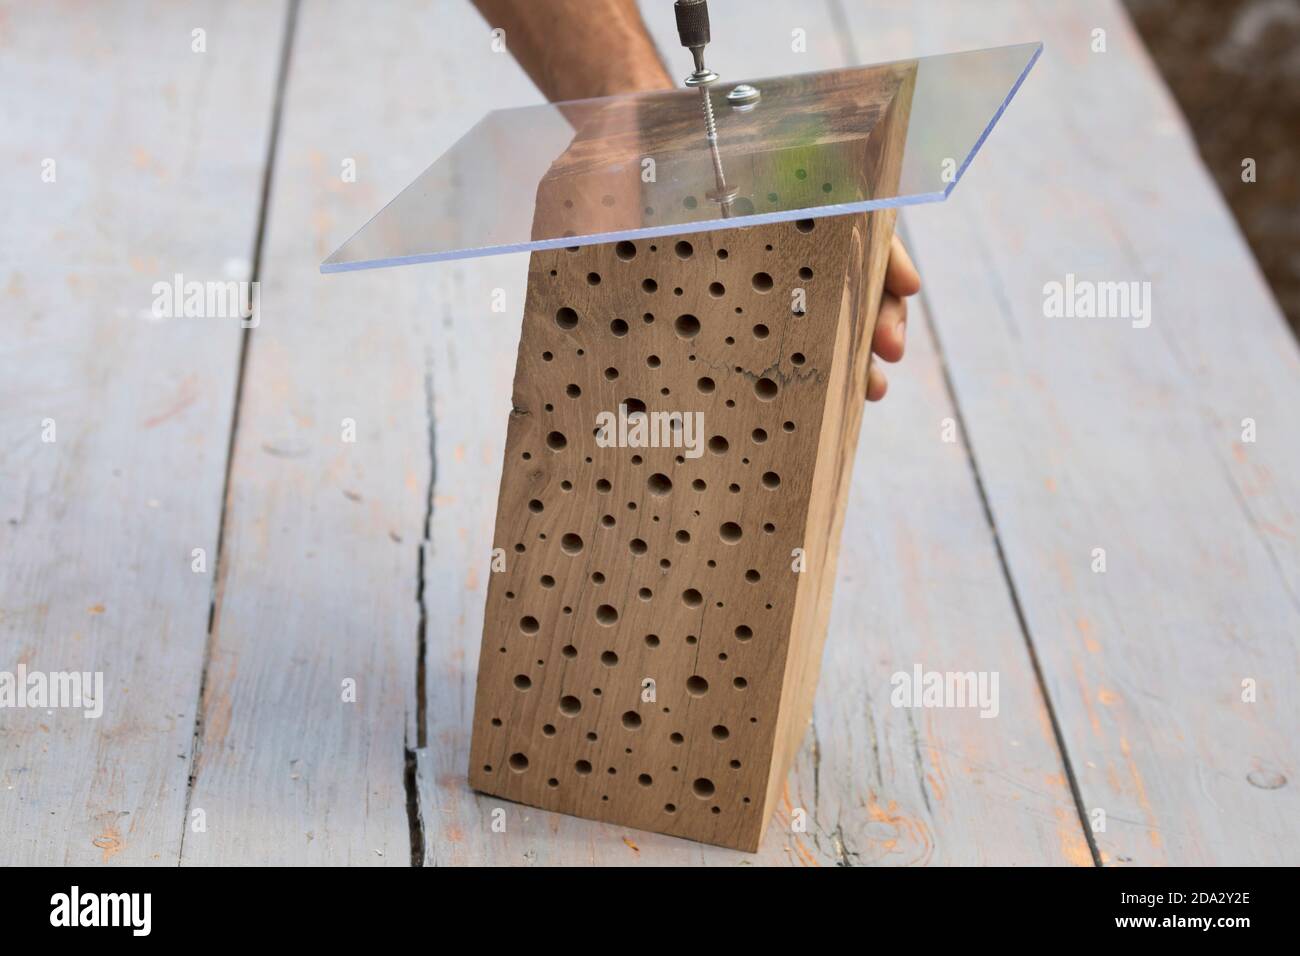 Nidificazione delle api selvatiche in legno duro, per la protezione contro la pioggia un pannello in plexiglass è avvitato sul lato smussato, in Germania Foto Stock